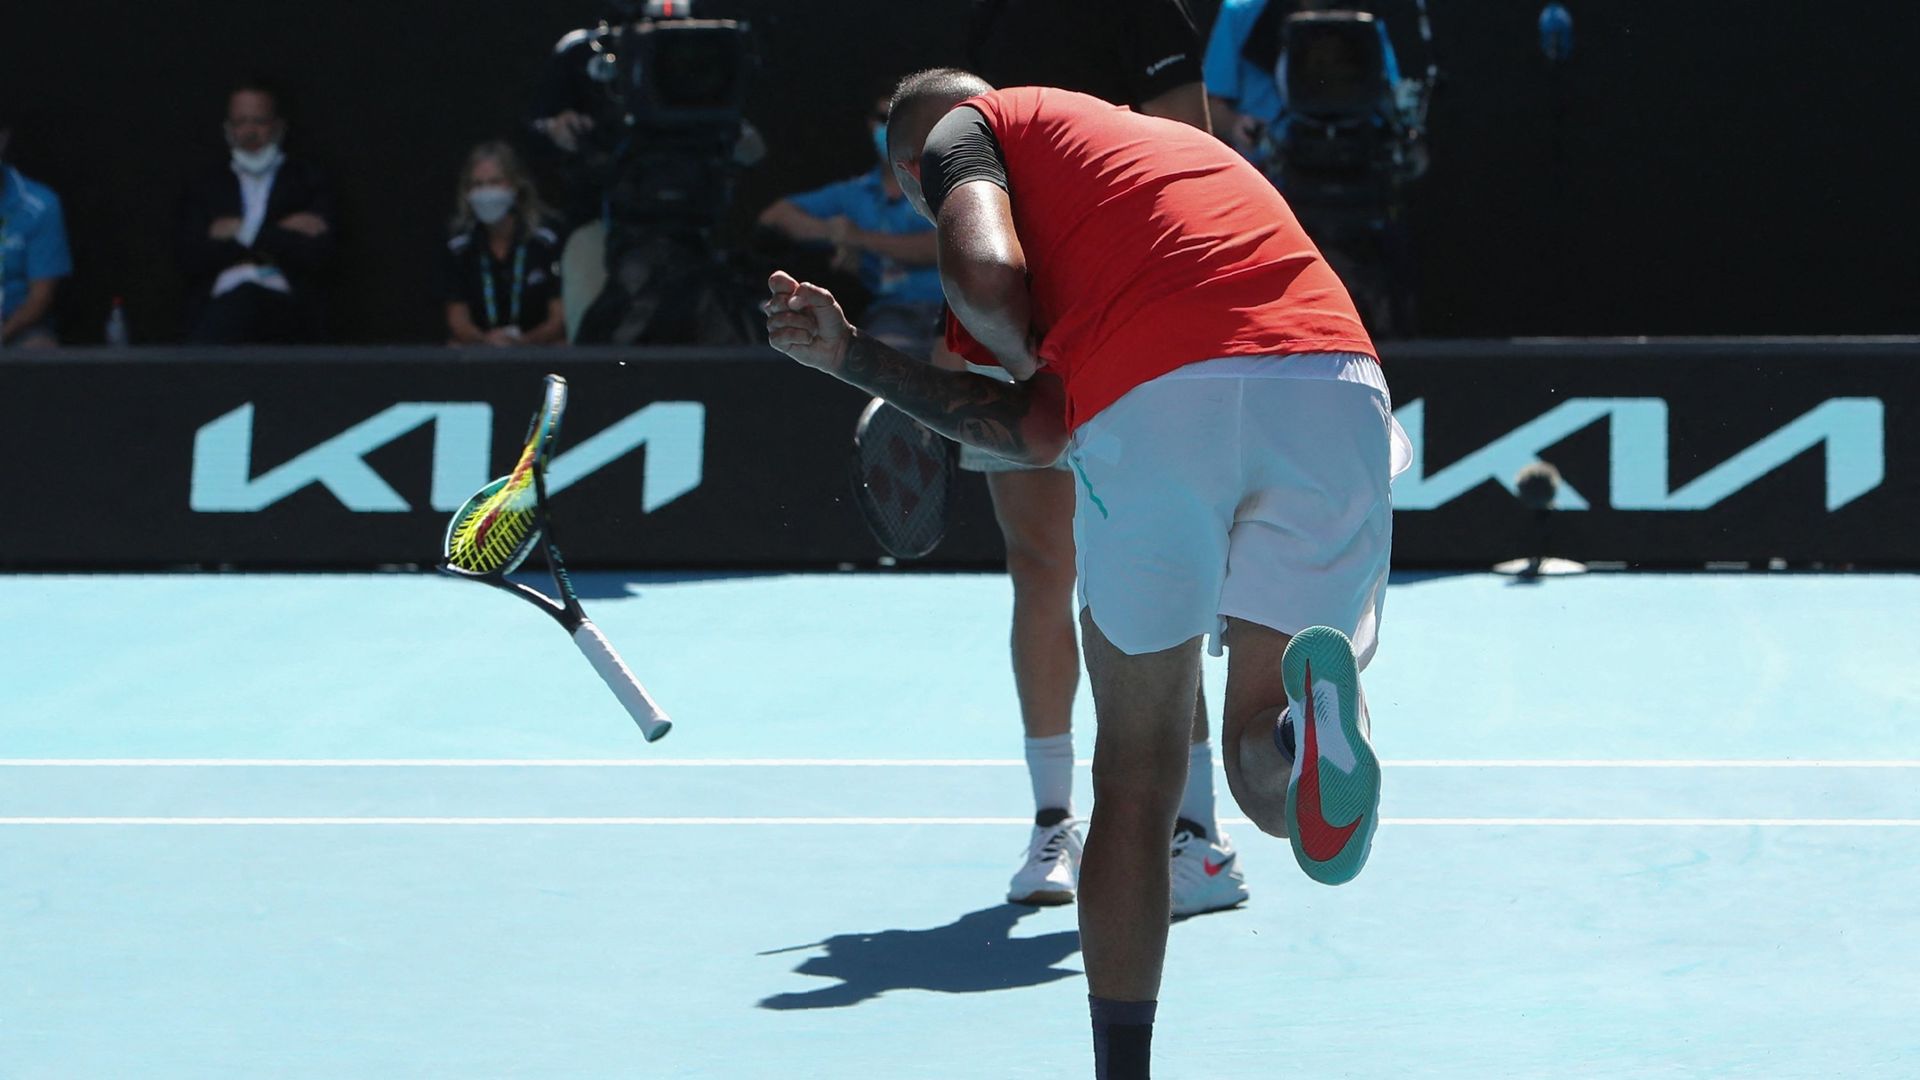 Tennis – Nick Kyrgios brise sa raquette lors de la demi-finale du tournoi de double de l’Open d’Australie. Le joueur australien a également adressé un doigt d’honneur à son propre public… Malgré ces nouveaux excès, il s’est qualifié (avec son partenaire T